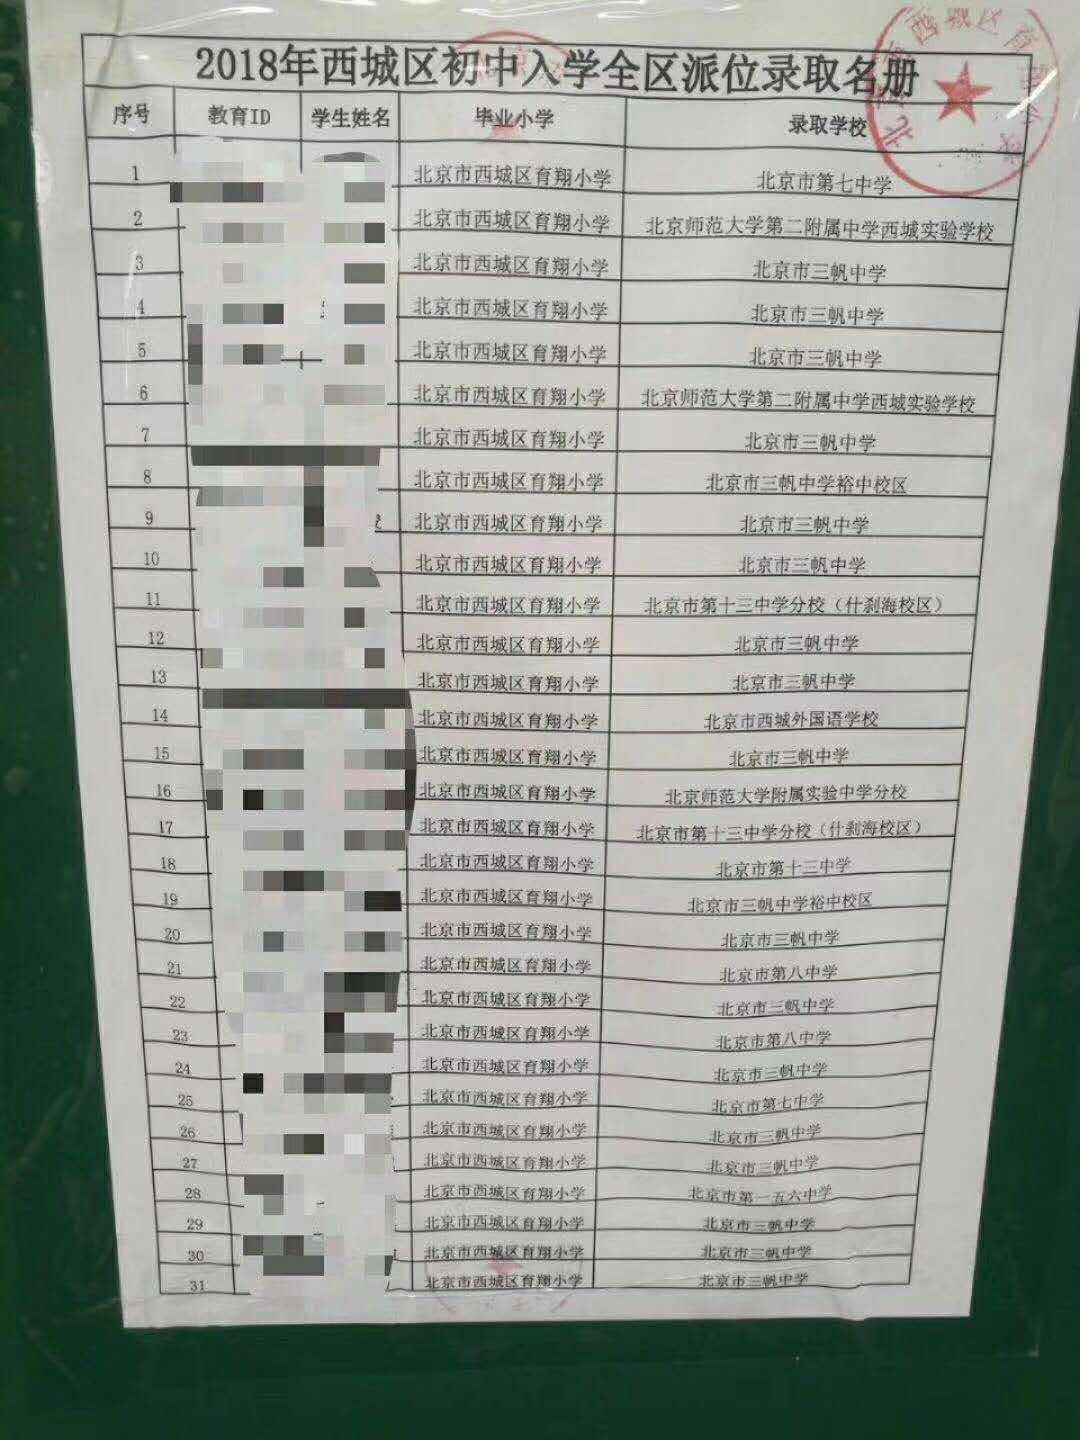 育翔小学2018年小升初全区派位录取名单